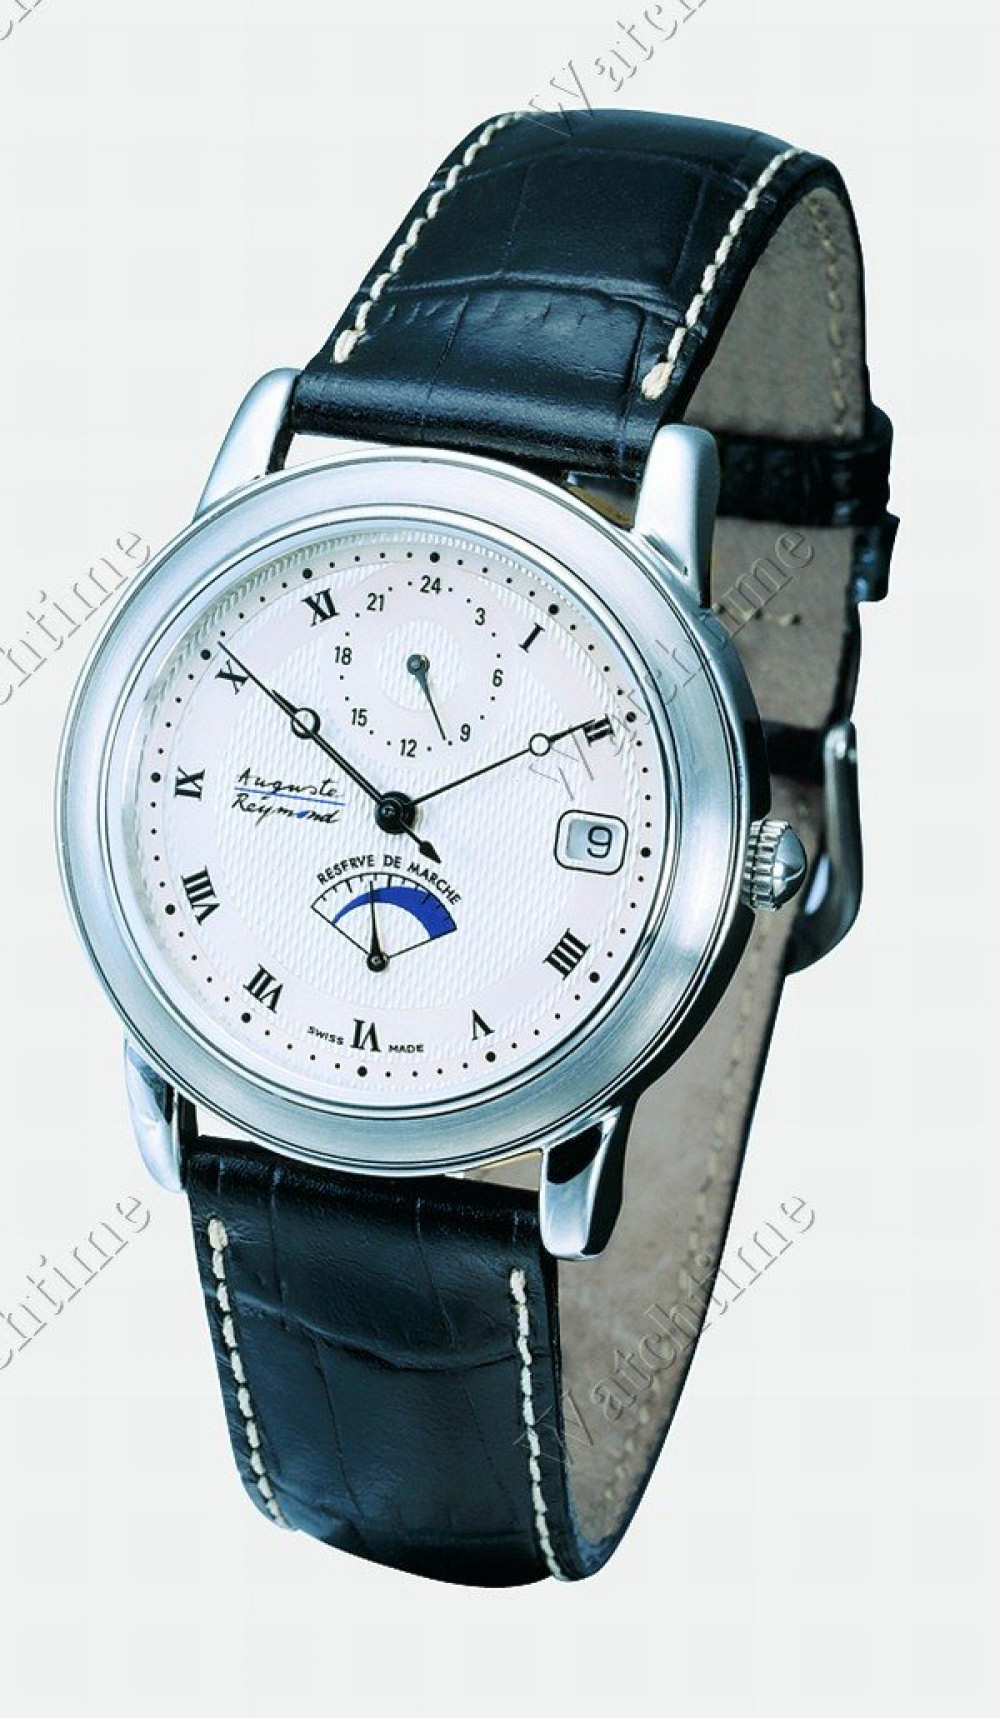 Zegarek firmy Auguste Reymond, model Ragtime Réserve de marche